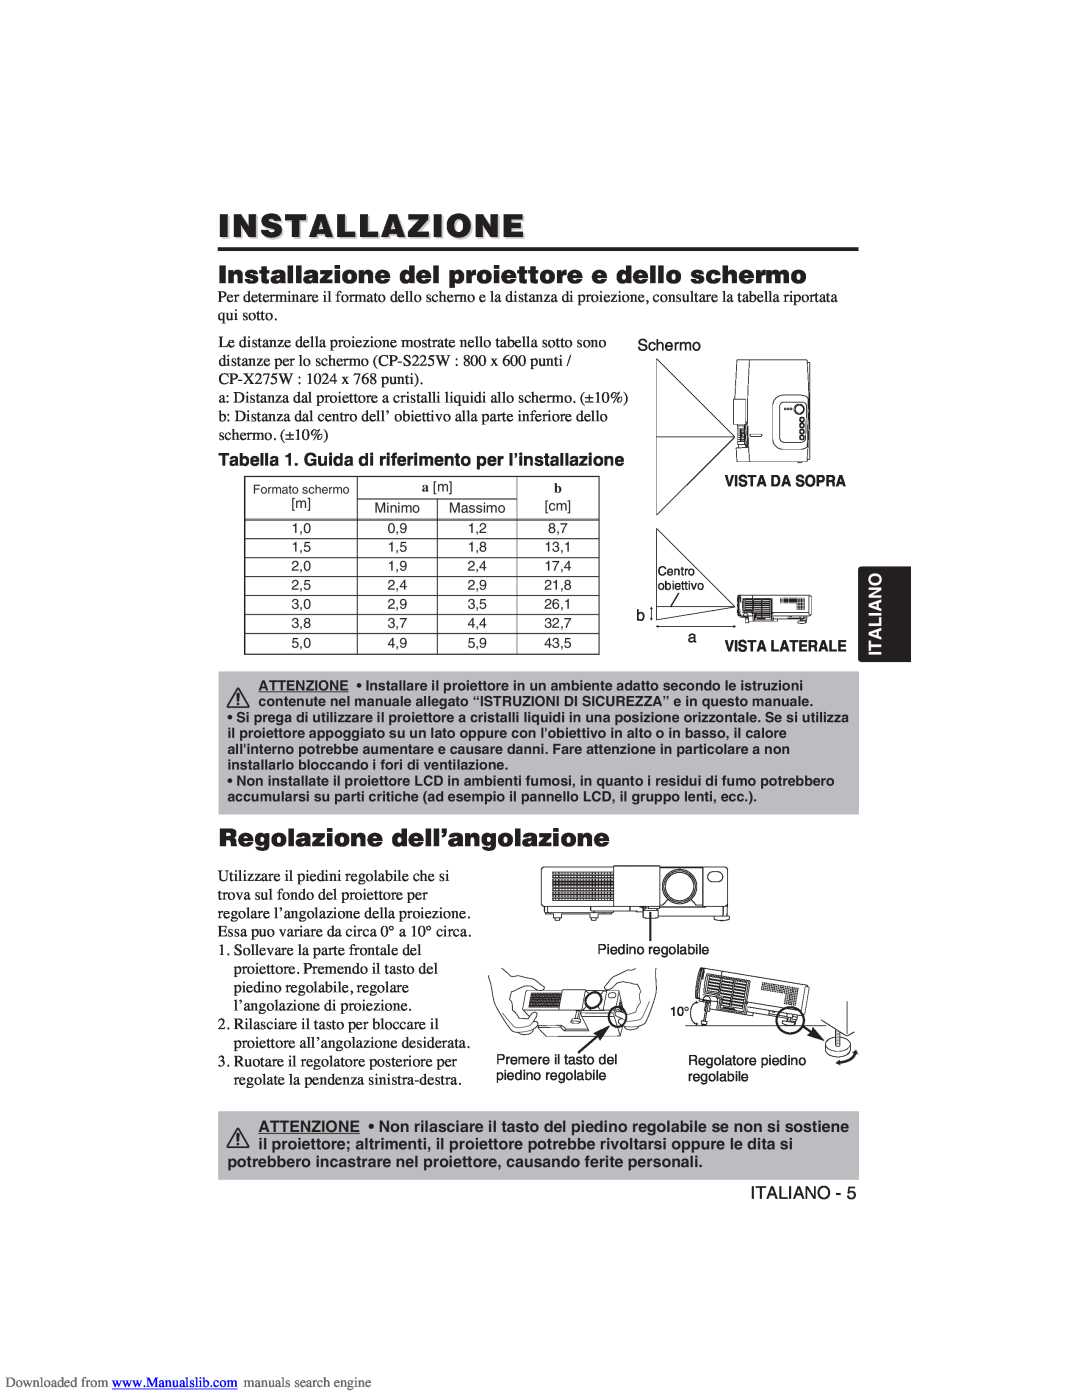 Hitachi CP-X275W user manual Installazione del proiettore e dello schermo, Regolazione dell’angolazione, Italiano 